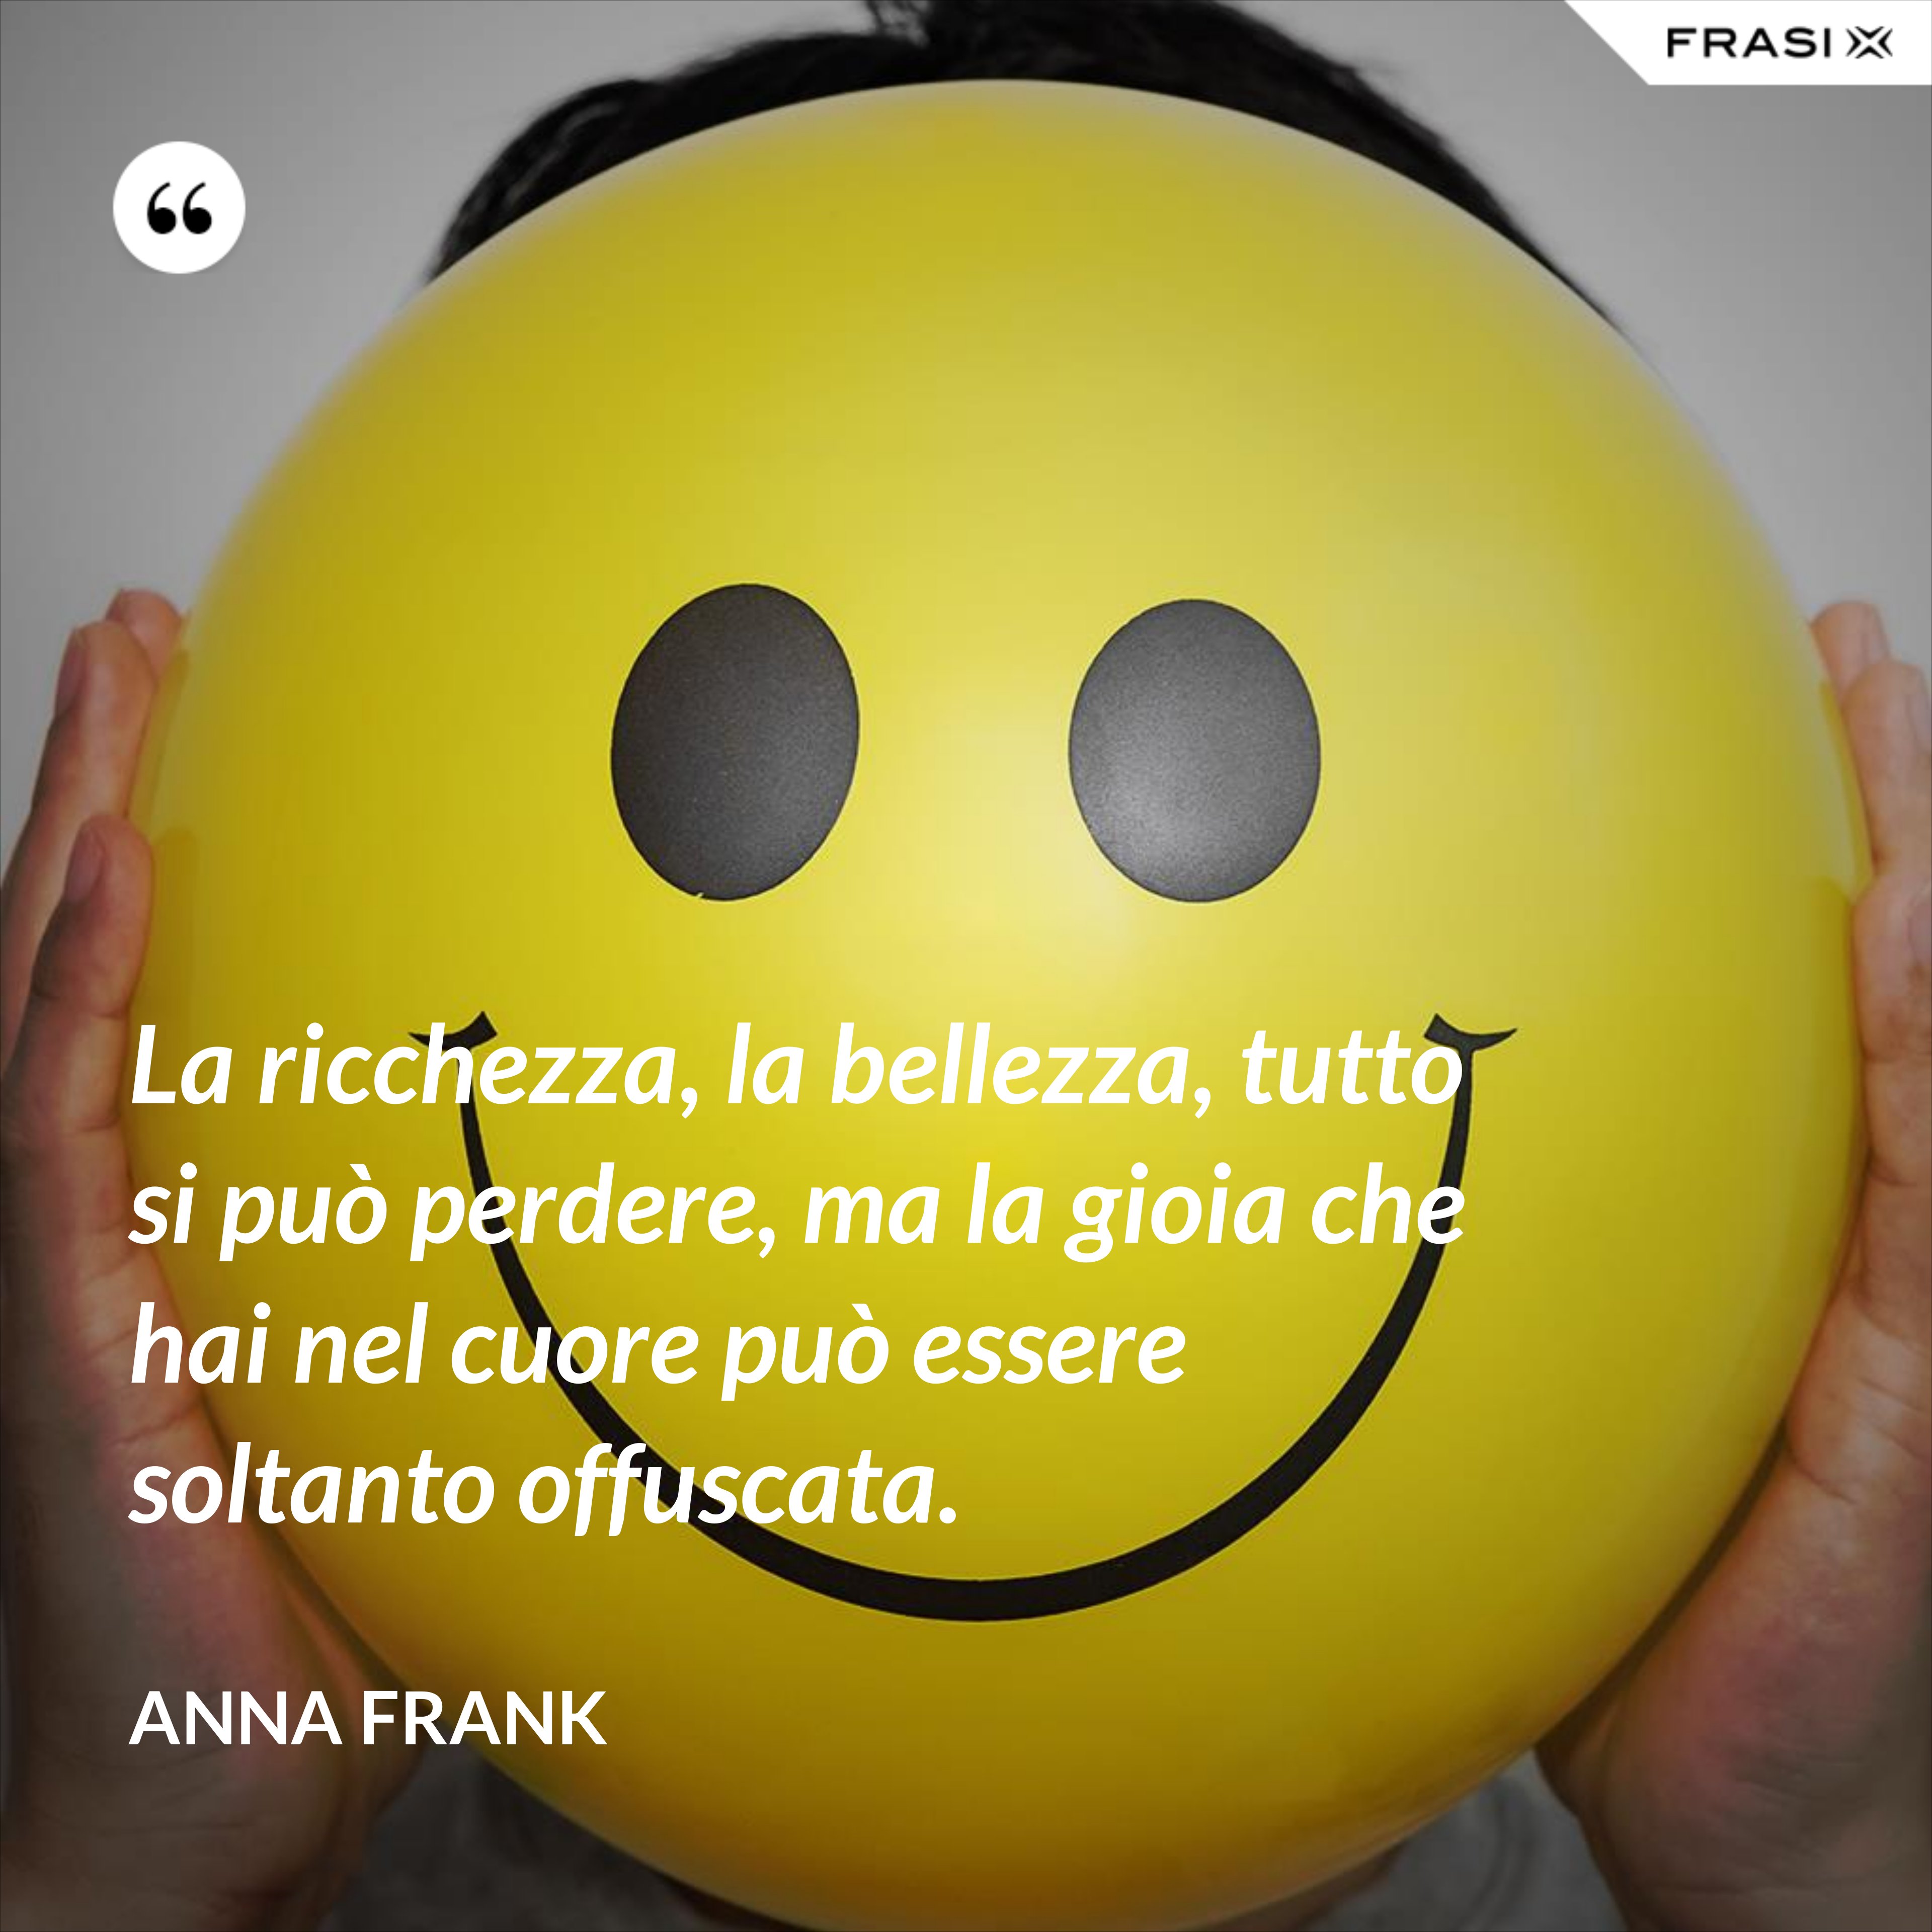 La ricchezza, la bellezza, tutto si può perdere, ma la gioia che hai nel cuore può essere soltanto offuscata. - Anna Frank